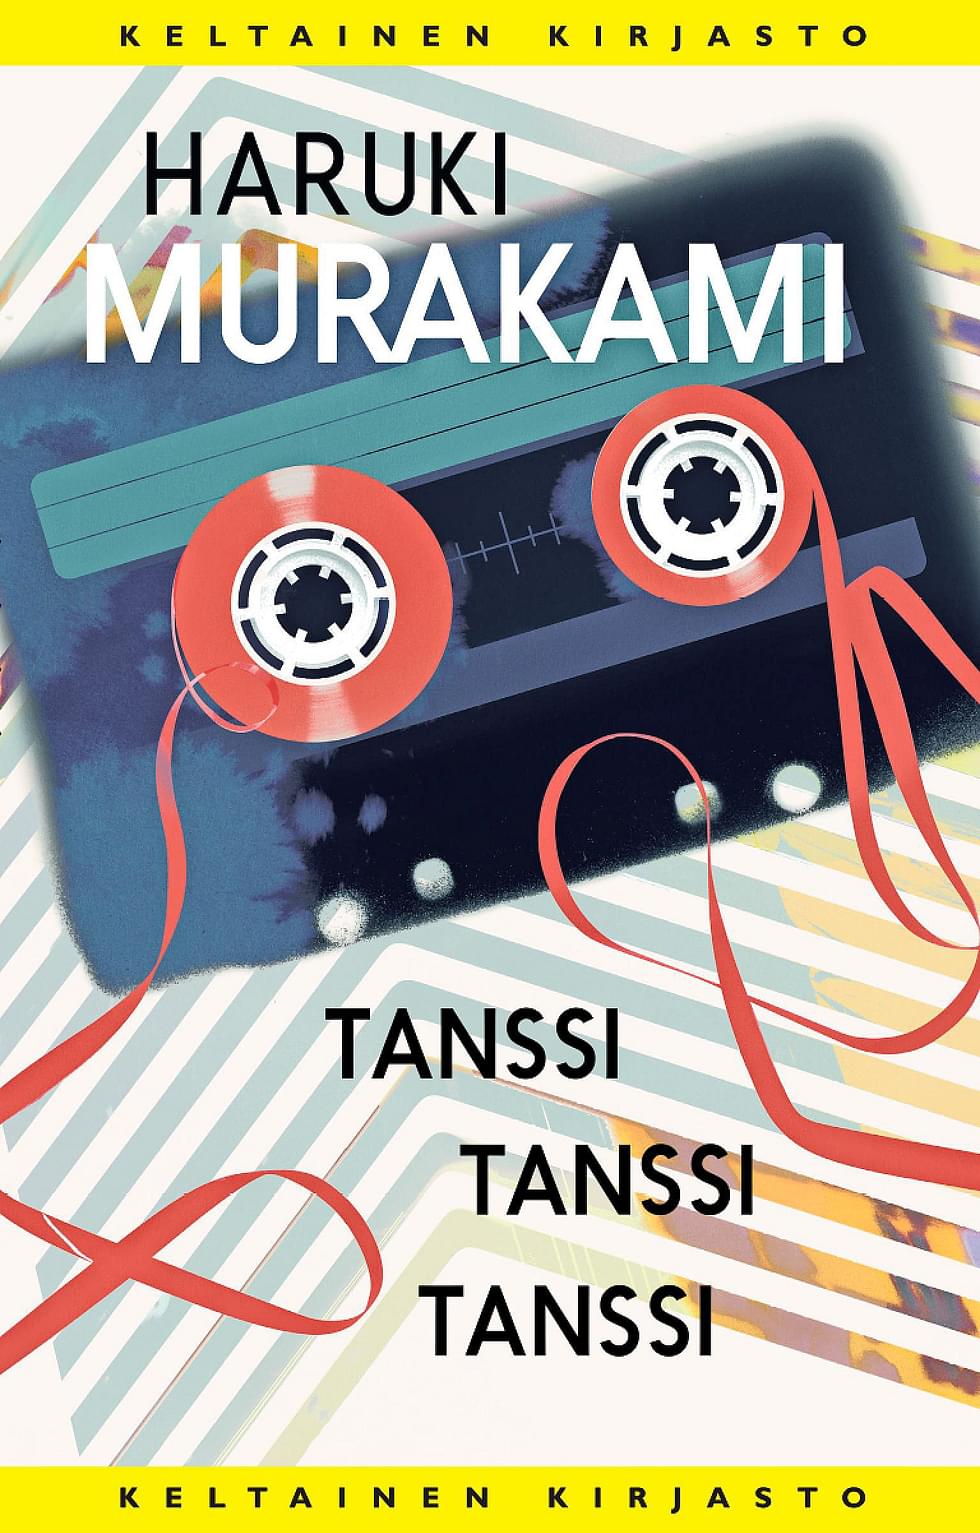 Haruki Murakamin teoksessa Tanssi tanssi tanssi liikutaan 1980-luvun Japanissa.